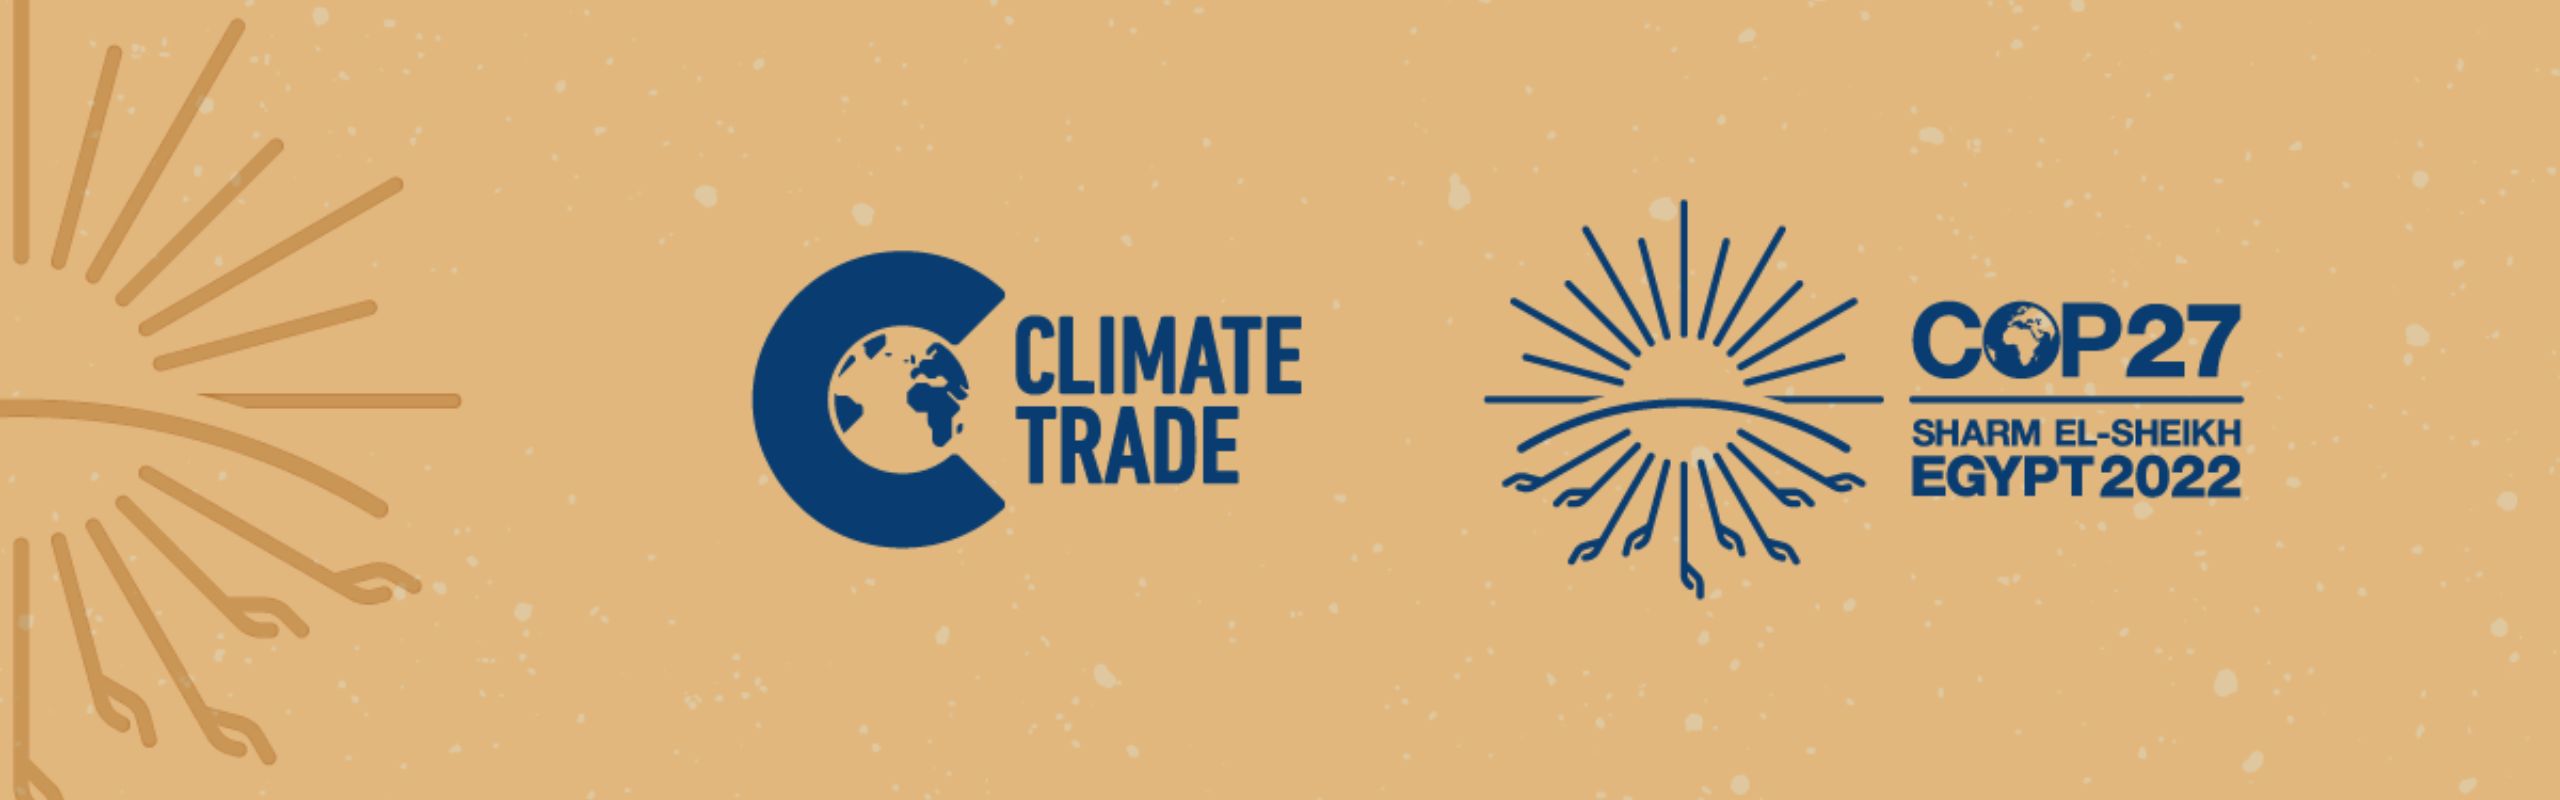 ClimateTrade COP27